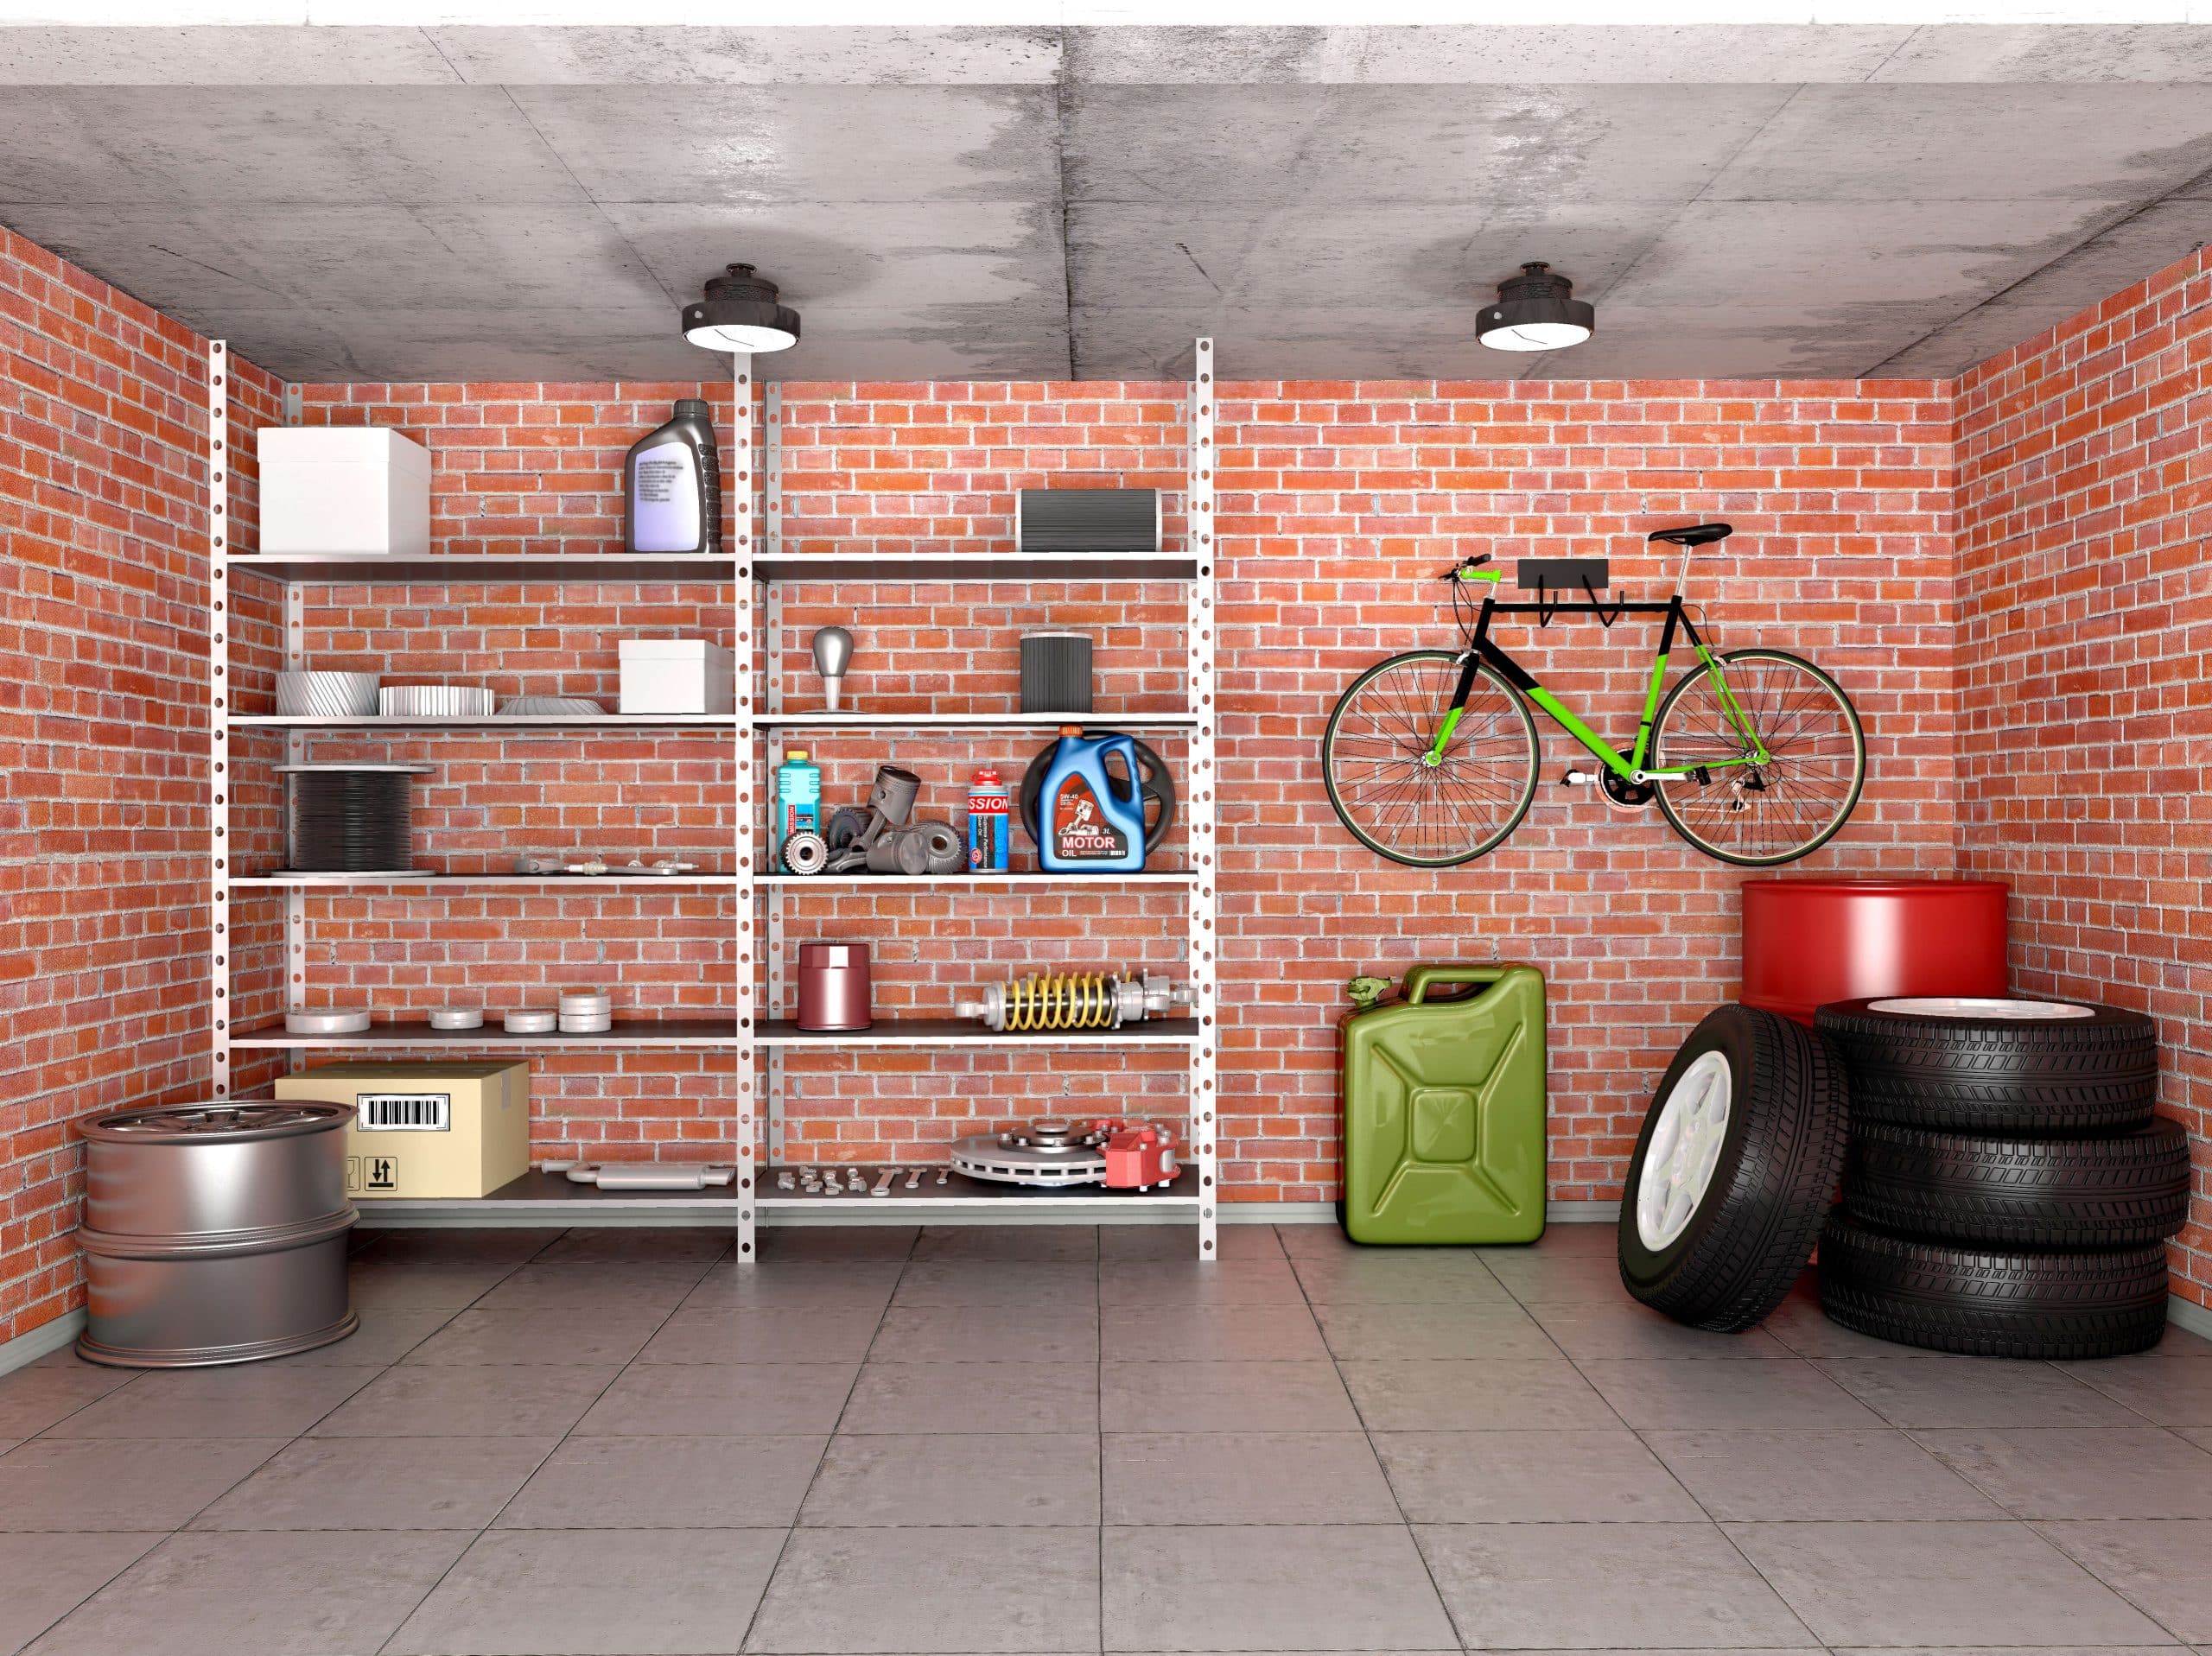 Uporządkowane wnętrze garażu z ułożonymi oponami, zawieszonym rowerem oraz narzędziami i środkami czystości na regale